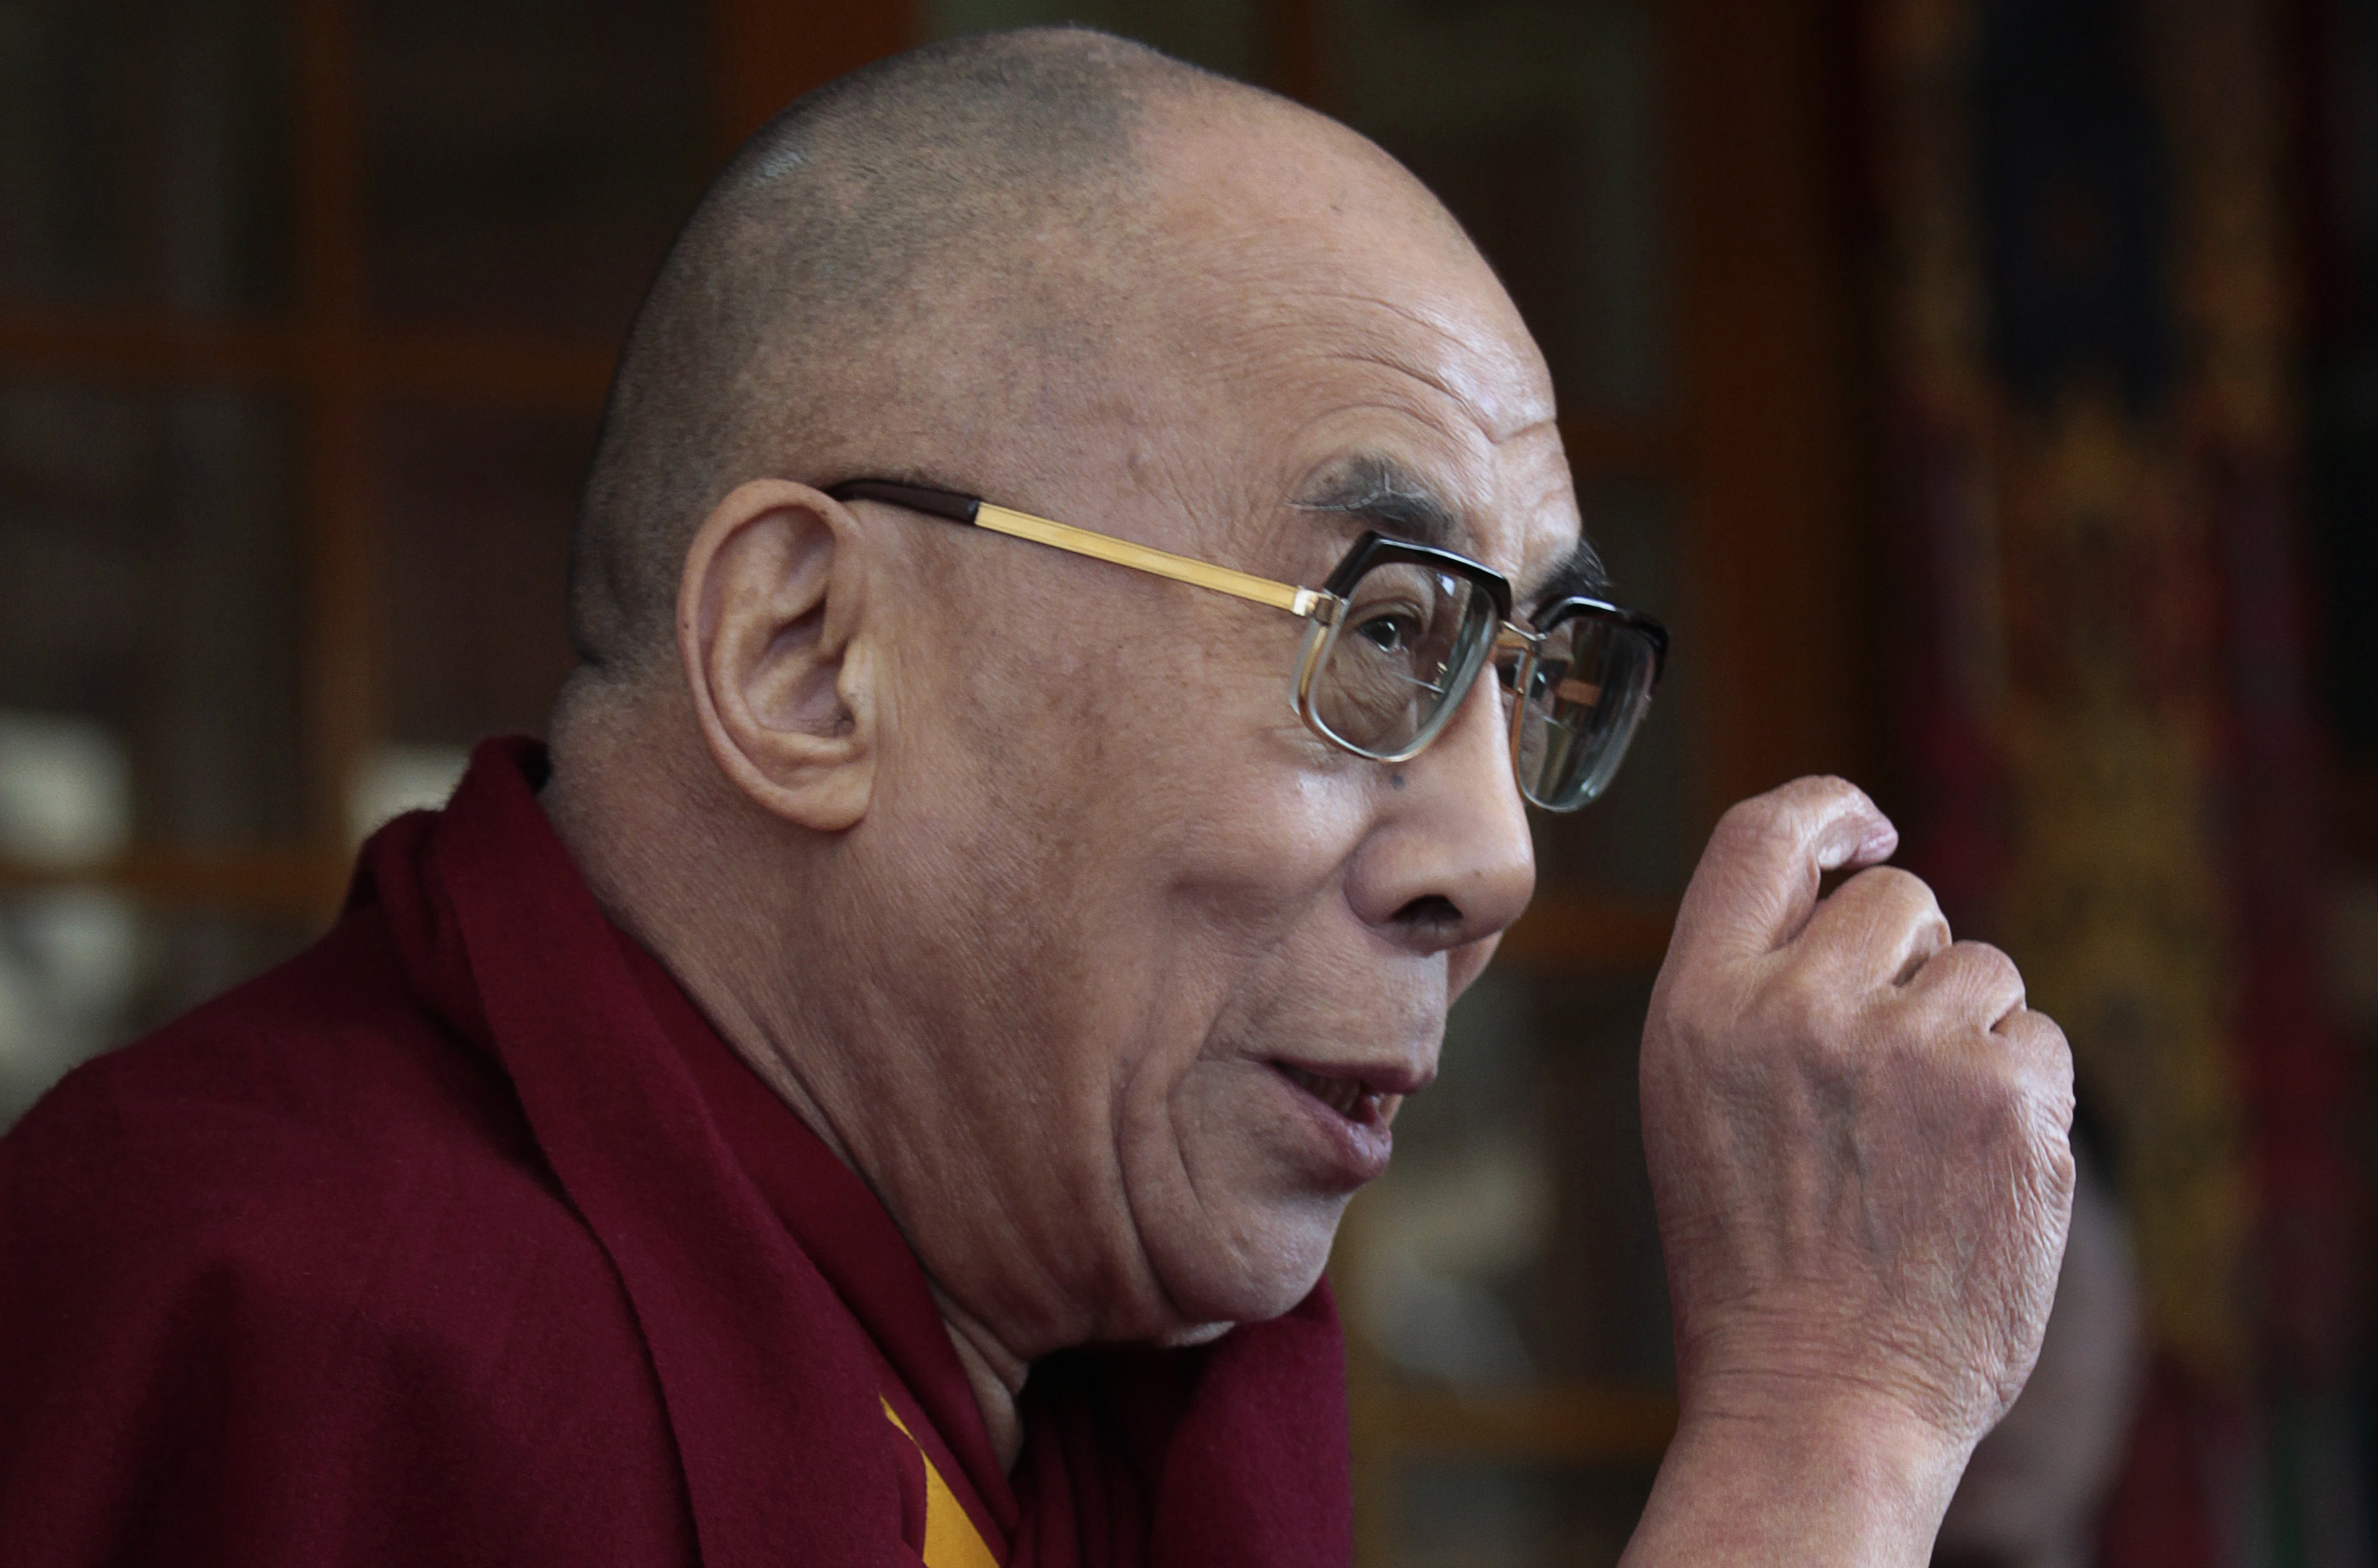 Tibet, Dalai Lama